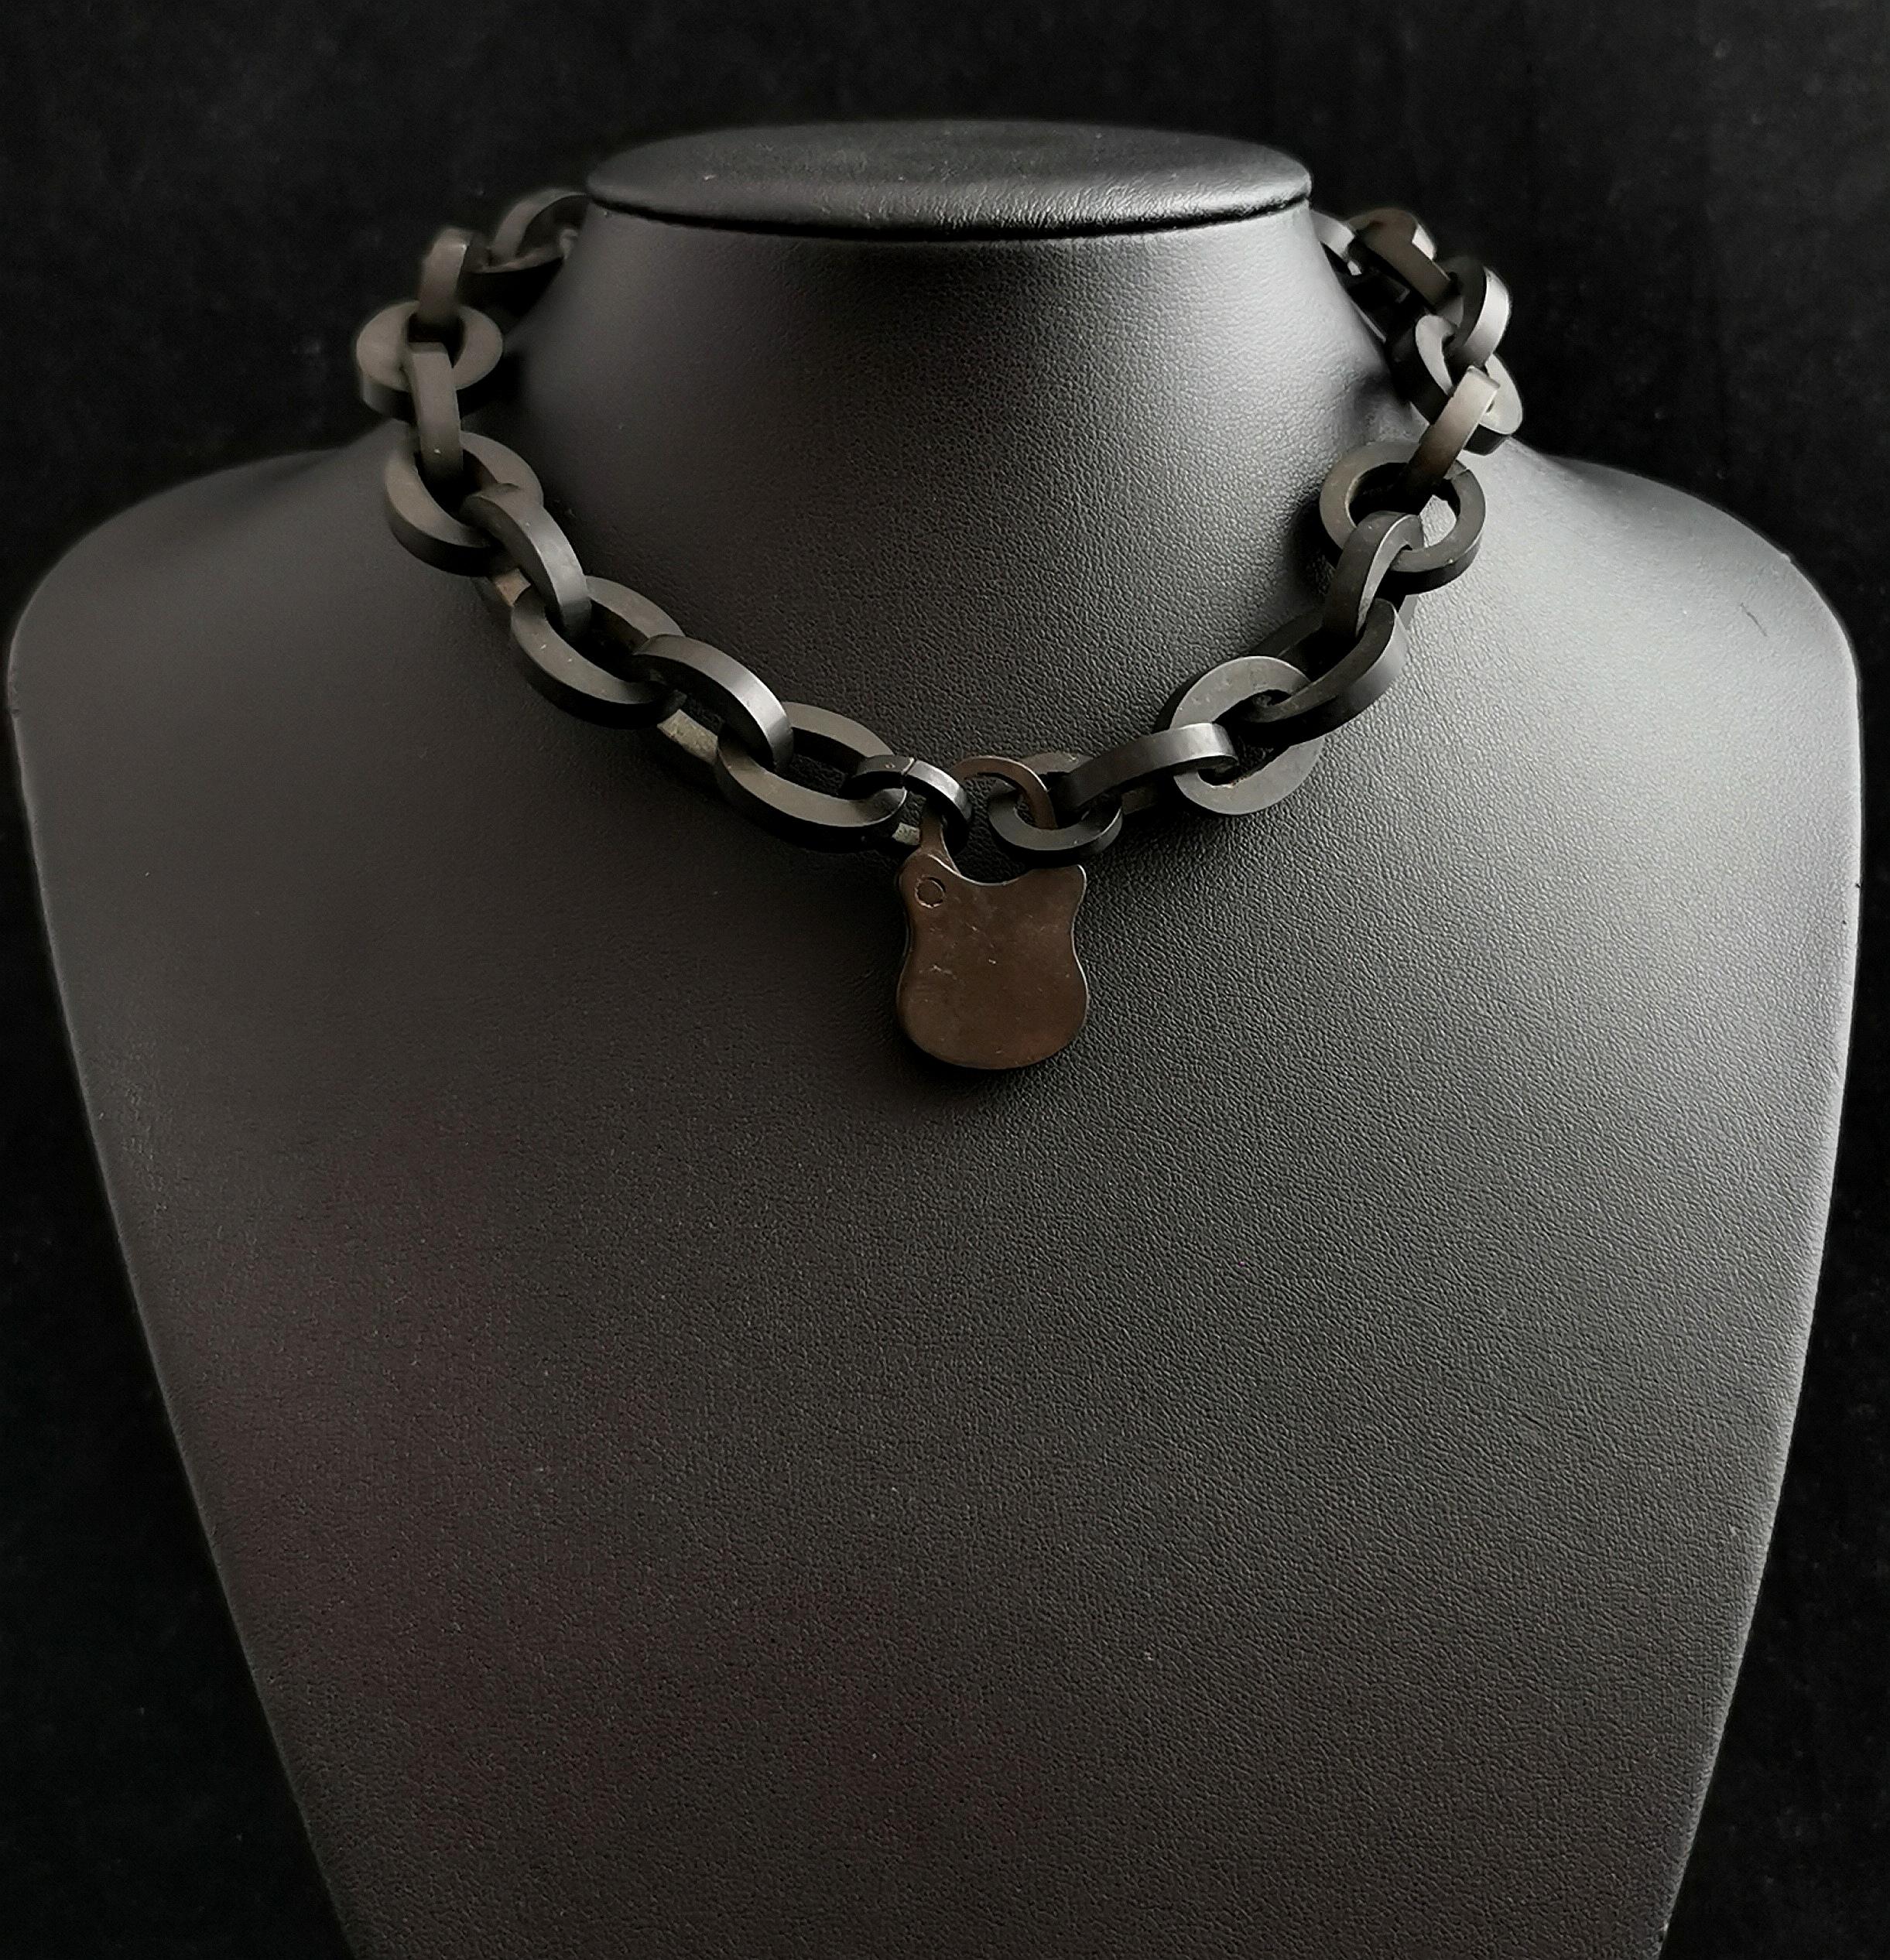 Eine schöne, seltene antike viktorianische Halskette.

Es hat klobige ovale Glieder mit einem schönen Vulkanit-Vorhängeschloss-Verschluss

Die schwarze Farbe steht für den Tod und der Verschluss des Vorhängeschlosses symbolisiert das Abschließen